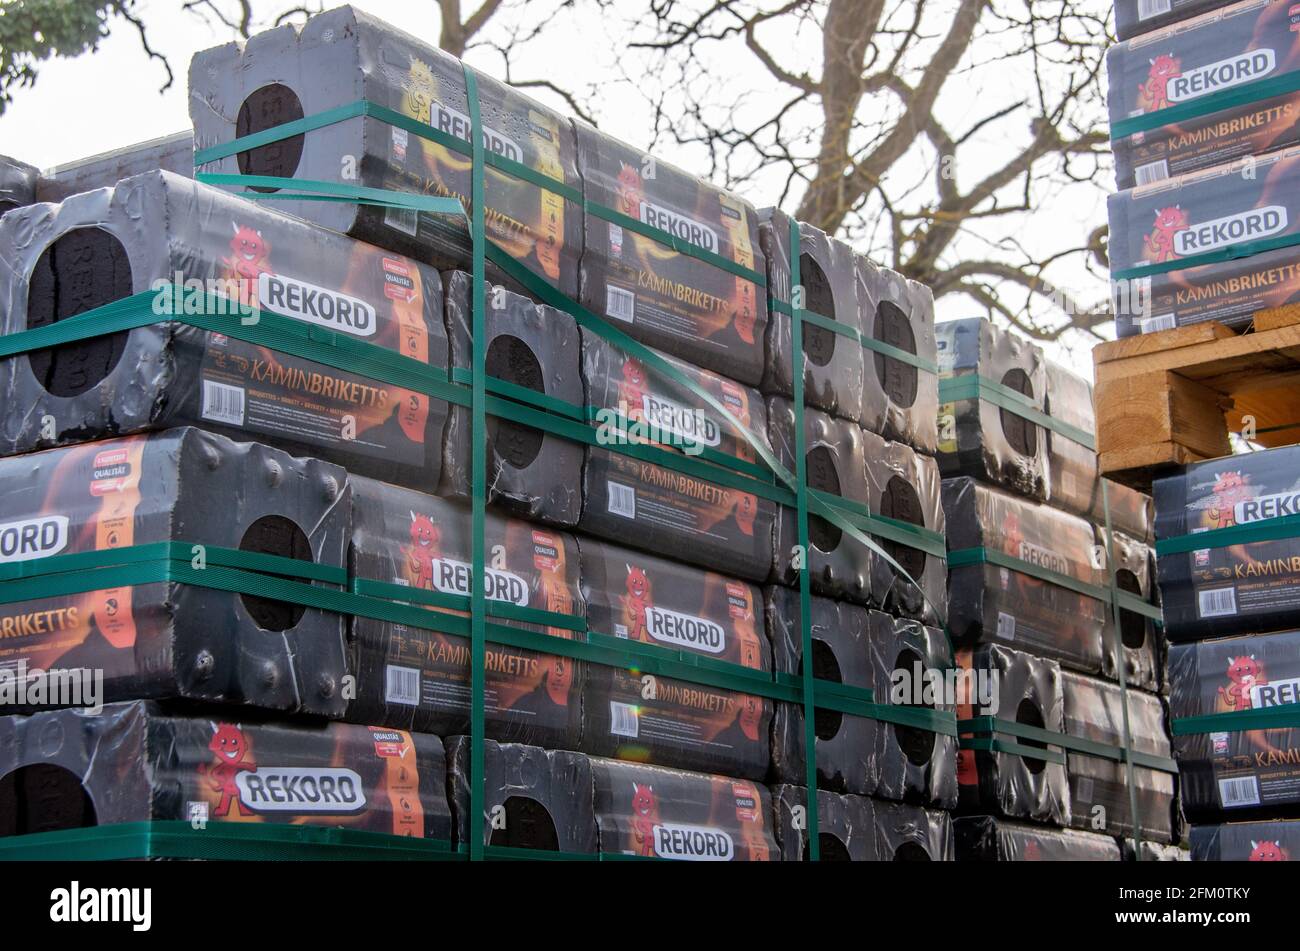 Bamberg, Allemagne - 10.4.2021. Les briquettes de charbon de bois de marque Rekord sont stockées sur une palette devant un magasin de quincaillerie Banque D'Images